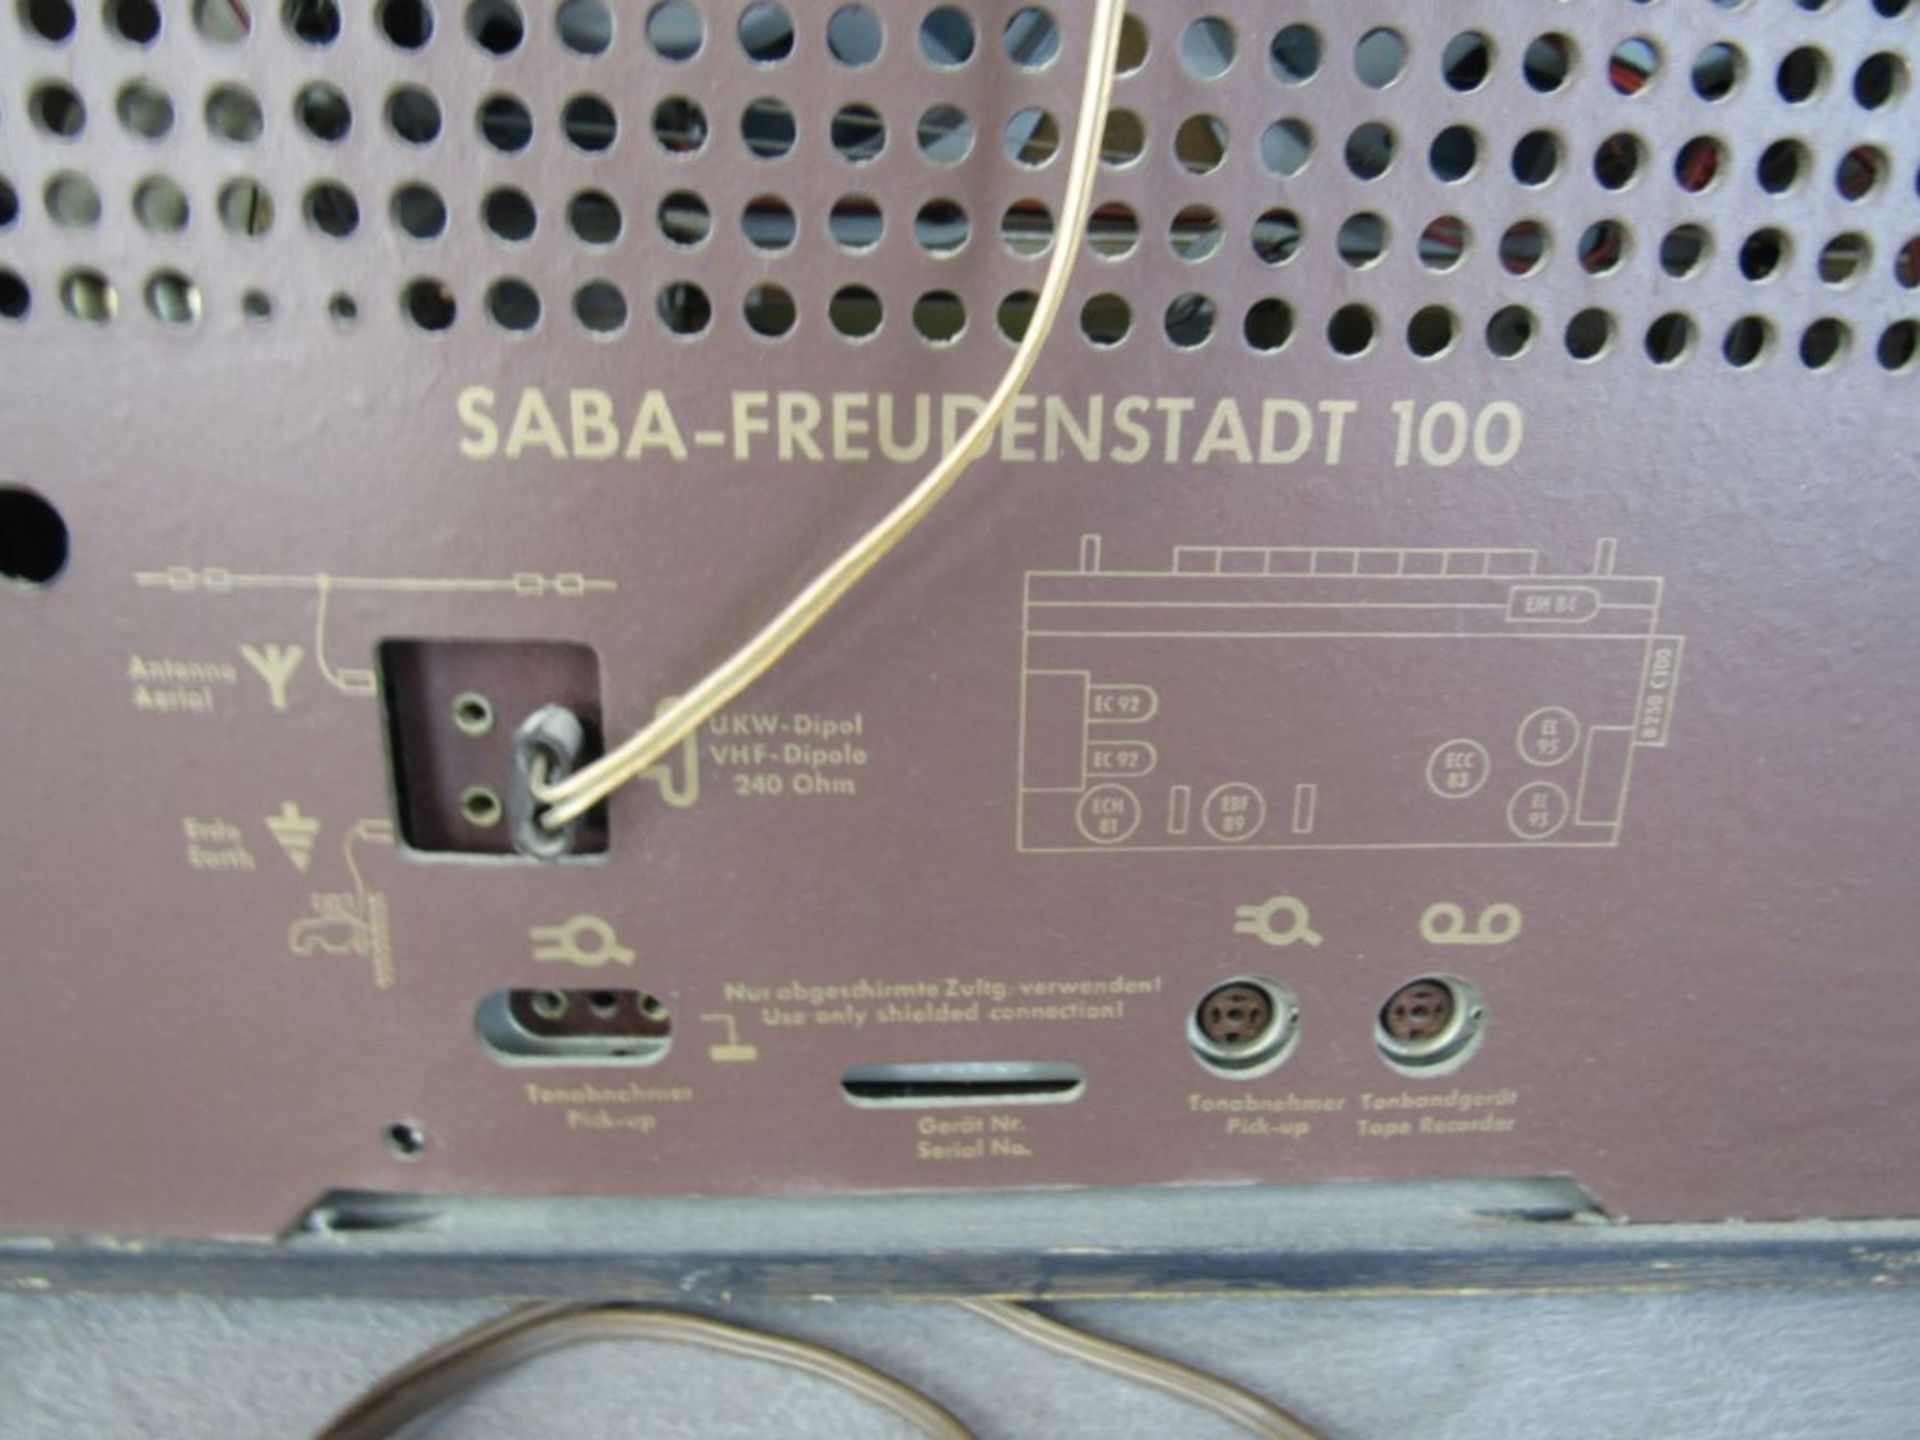 Röhrenradio Freudenstadt 100 Stereo 50er Jahre 60x28x38cm - Bild 7 aus 7